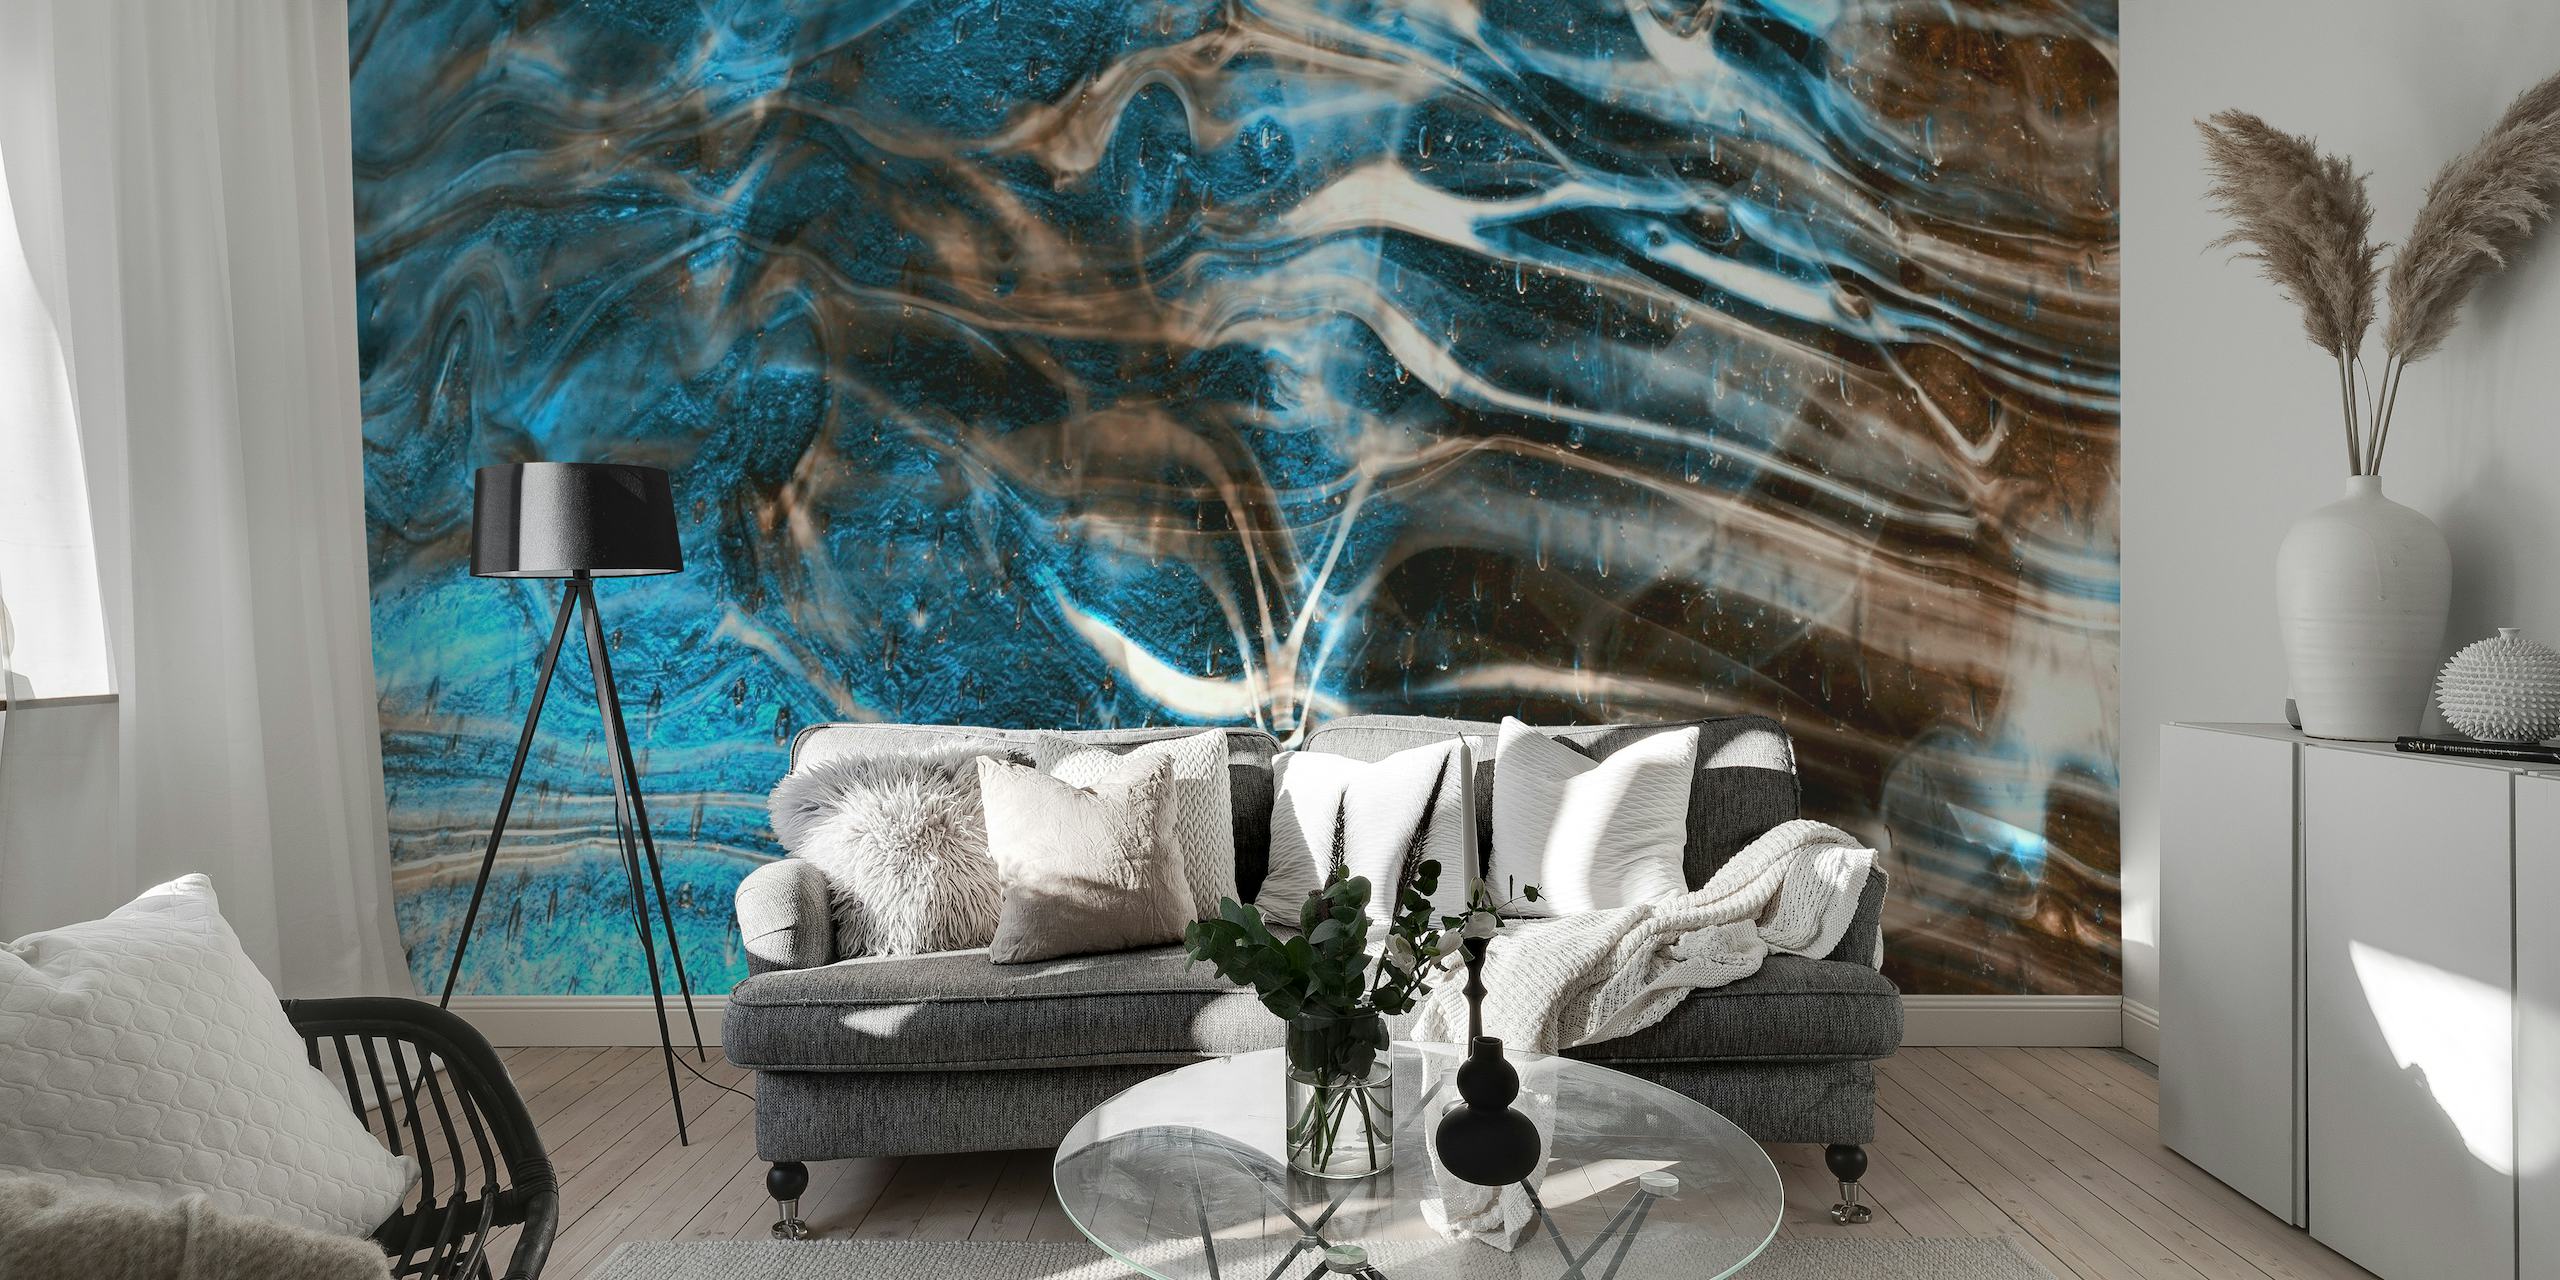 Fototapeta s modrým a hnědým mramorovým vzorem pro uklidňující atmosféru v místnosti